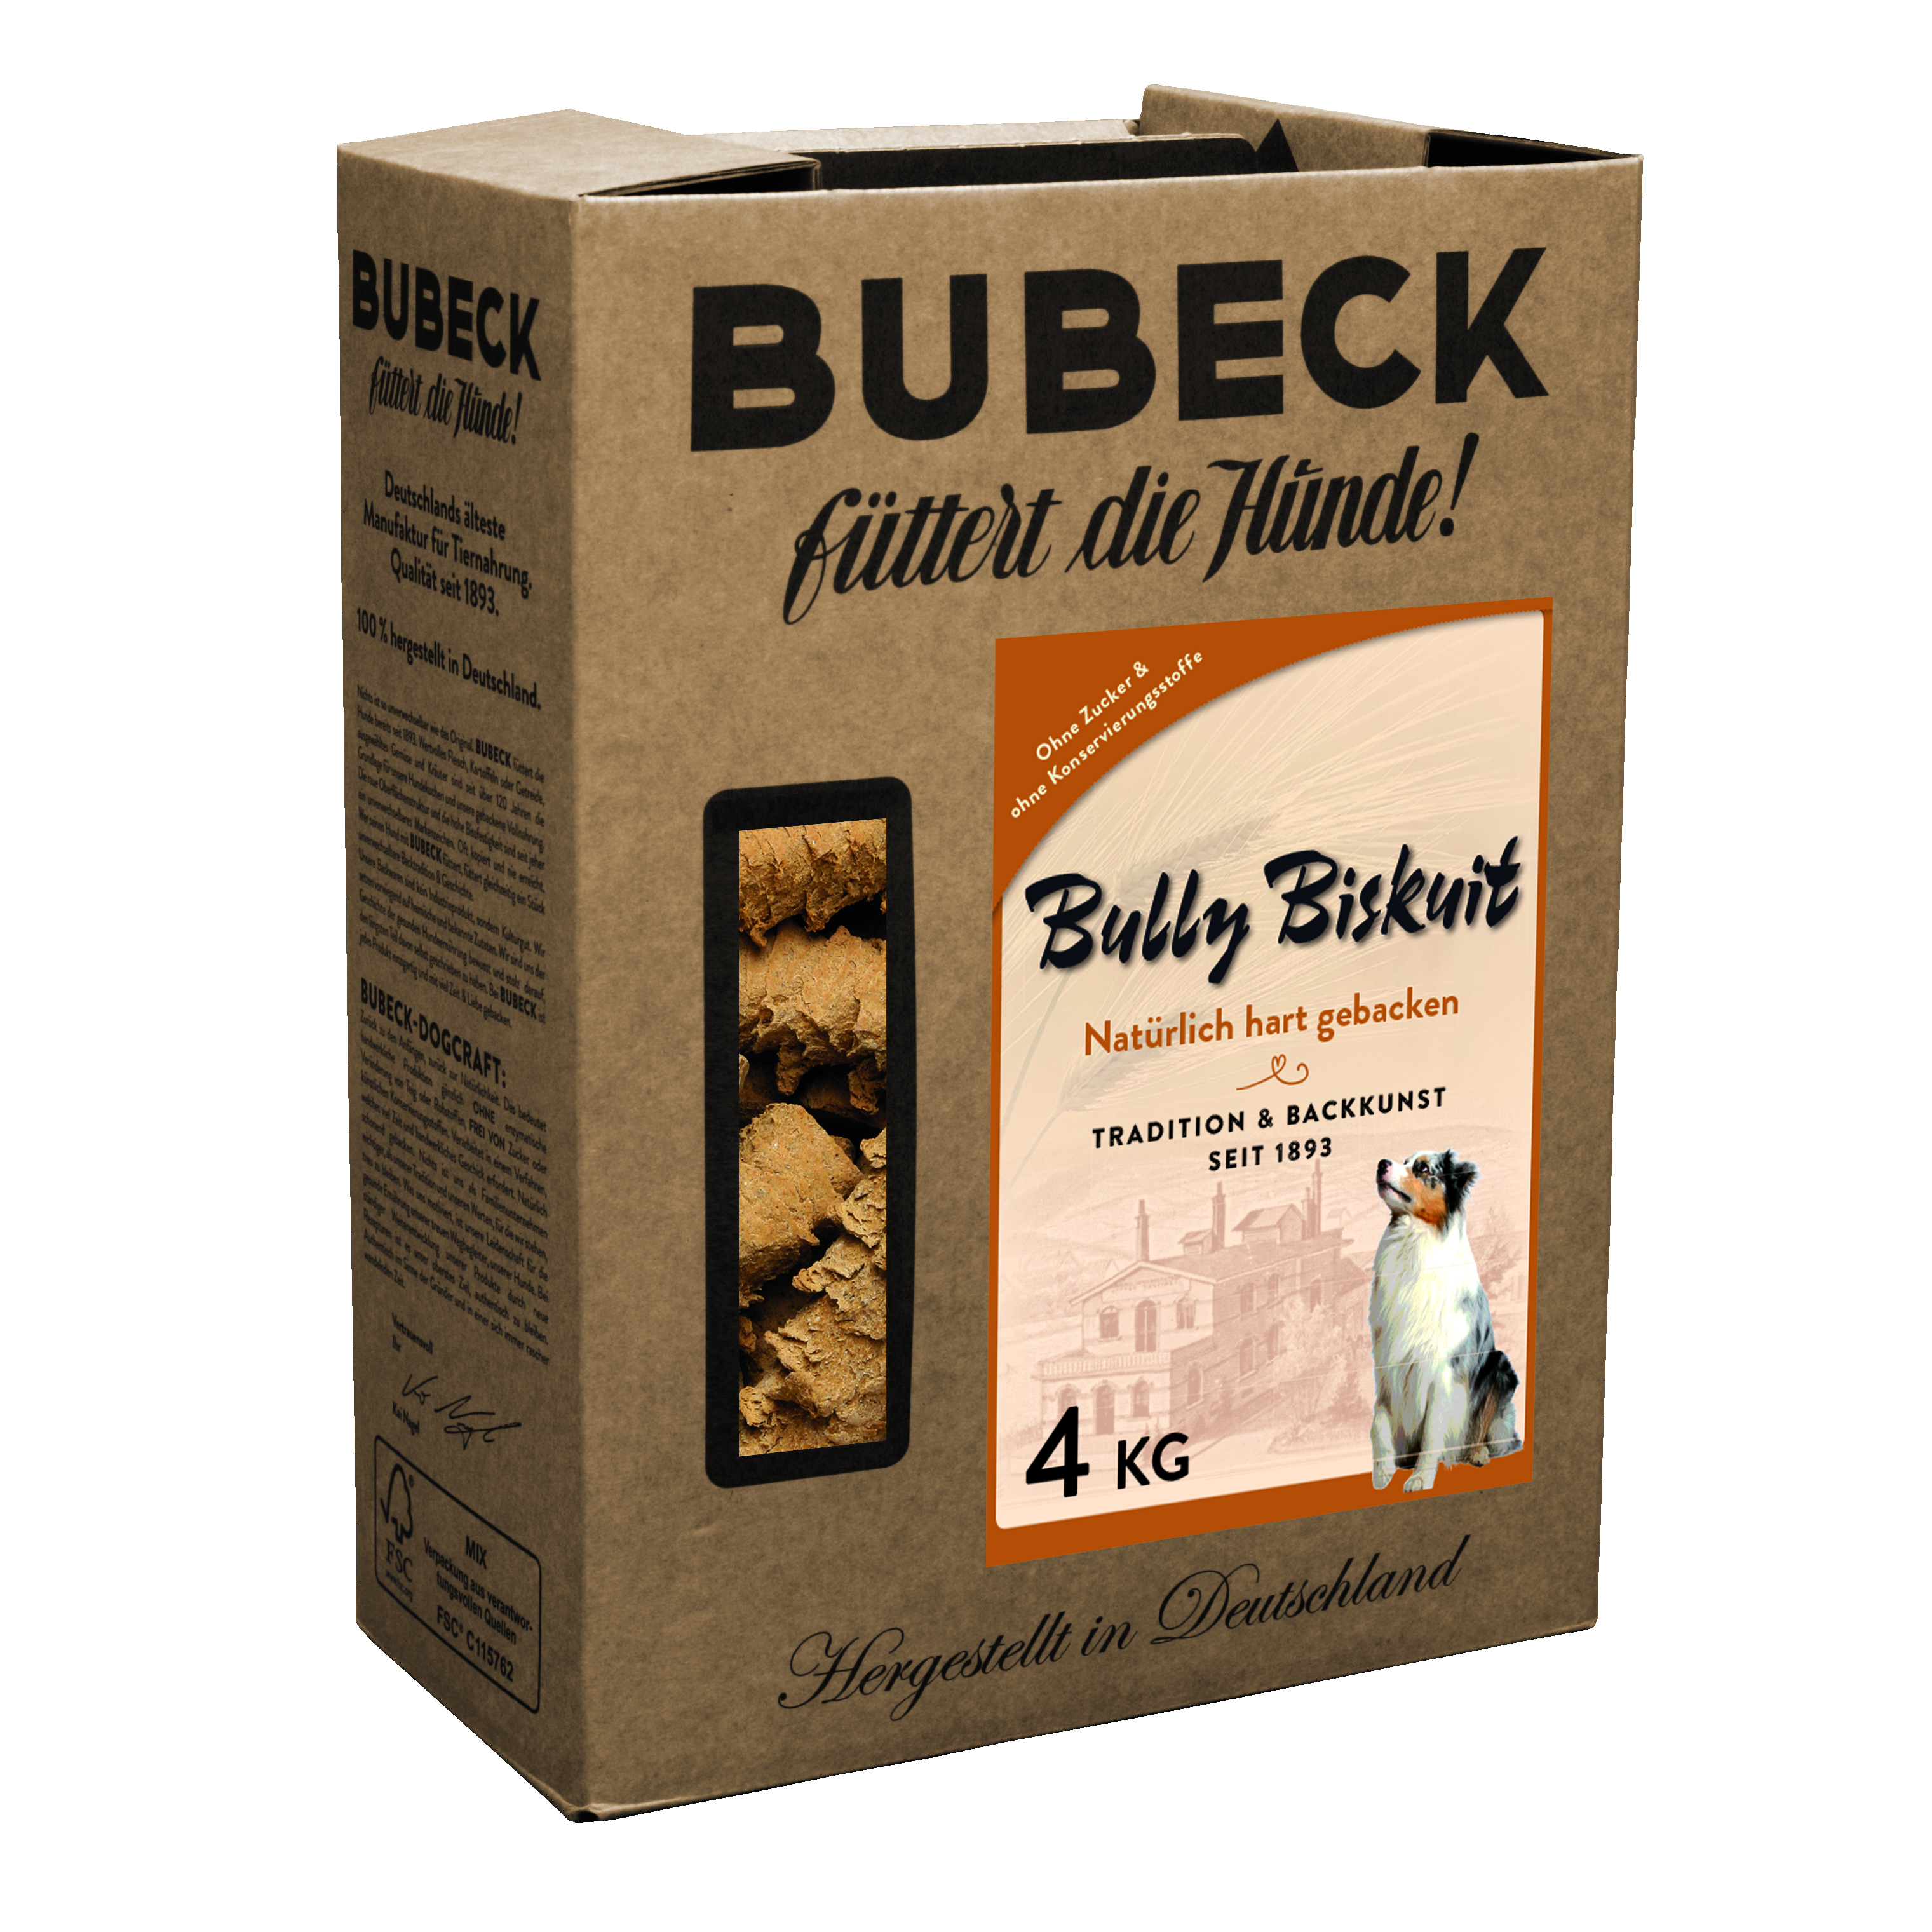 Bubeck, Bully Biskuit,  4kg